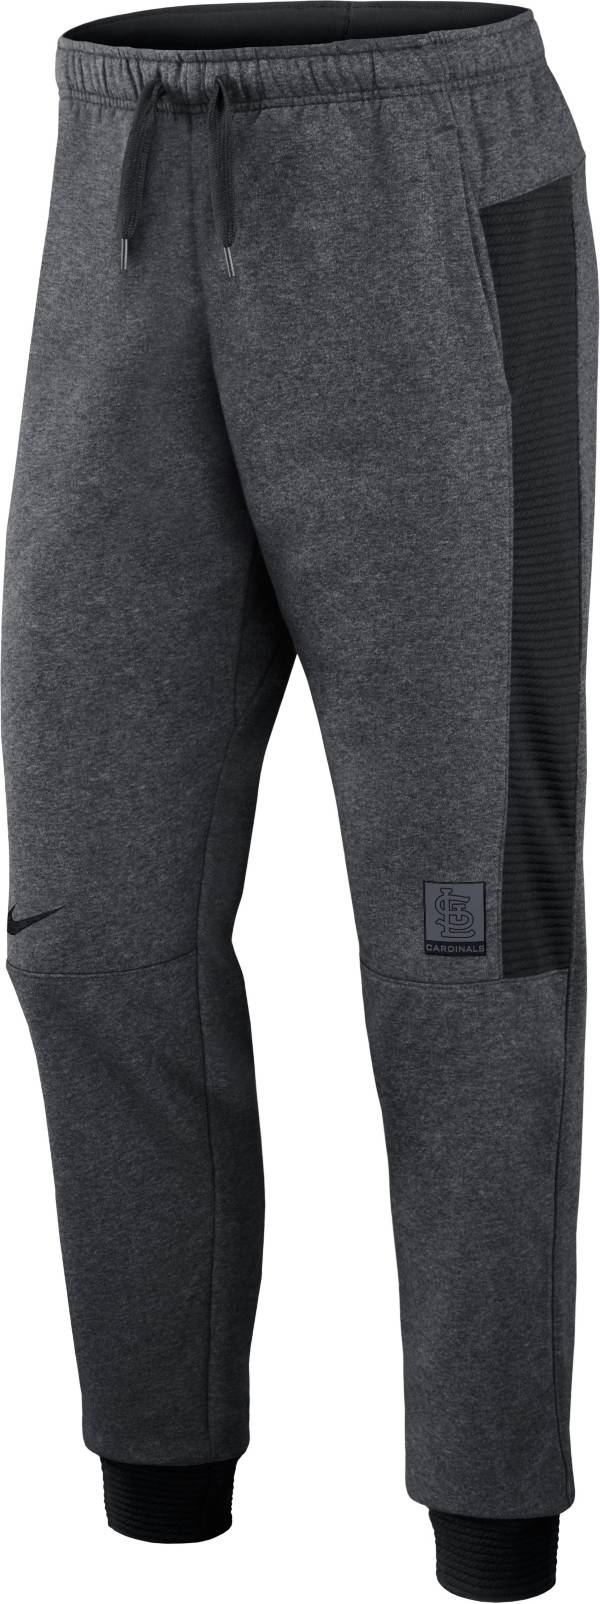 Nike Men's St. Louis Cardinals Gray Dri-FIT Flux Joggers product image